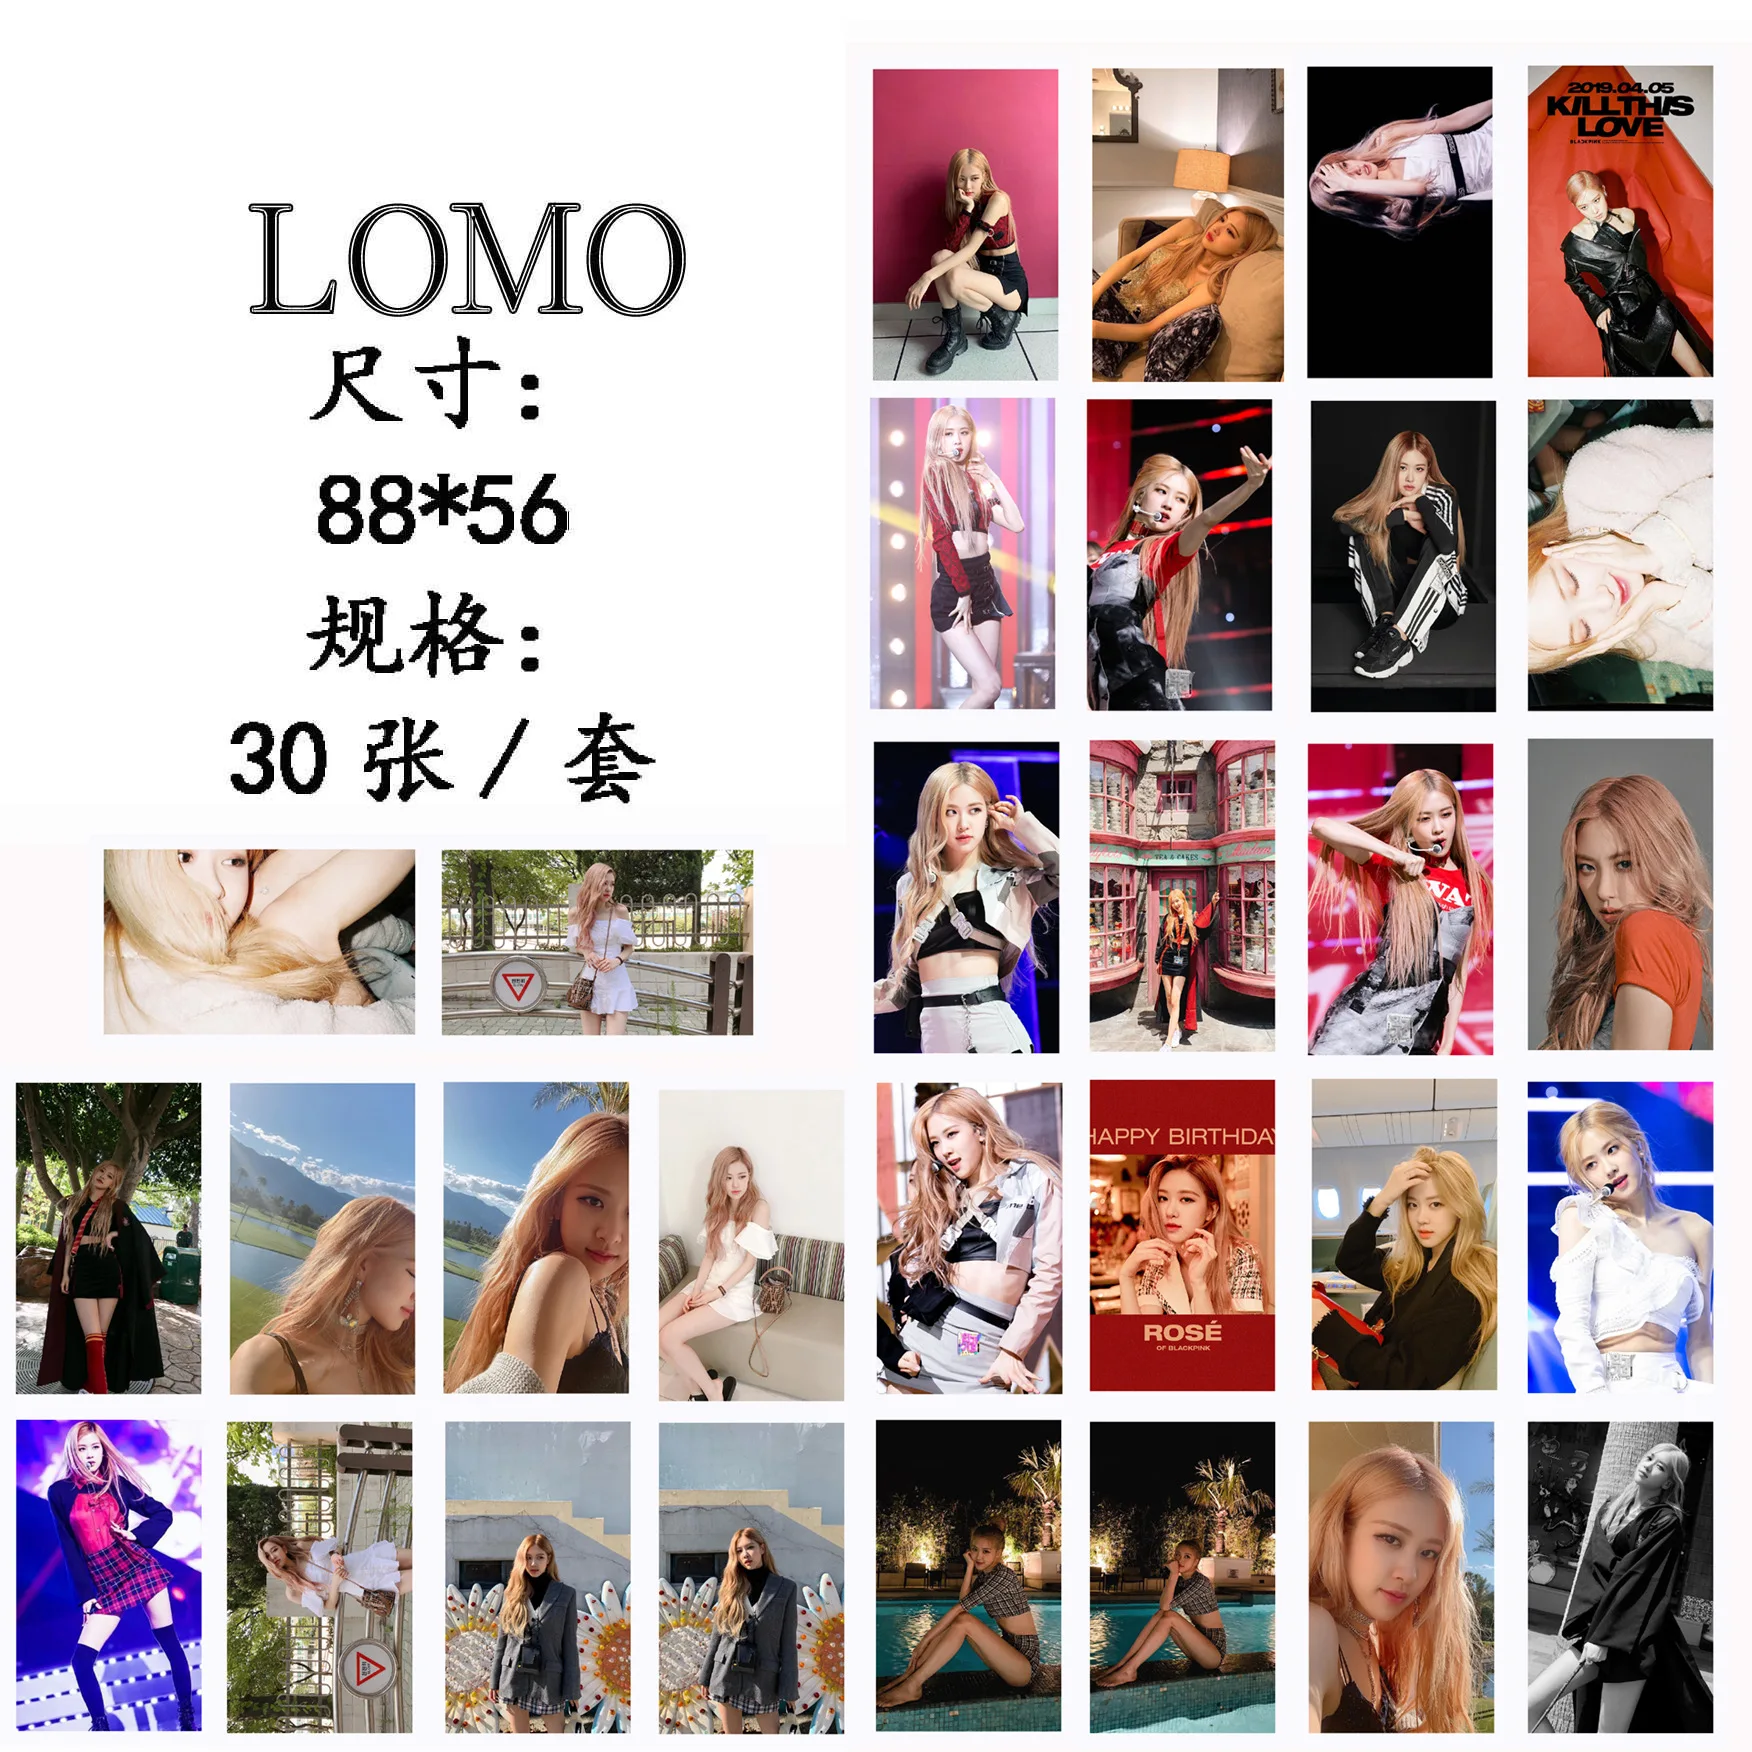 30 шт./лот/партия Новый Корейский KPOP BLACKPINK Girls Kill This Love 2019 новый альбом Фотокарта ПВХ карты самодельные LOMO Card Photocard